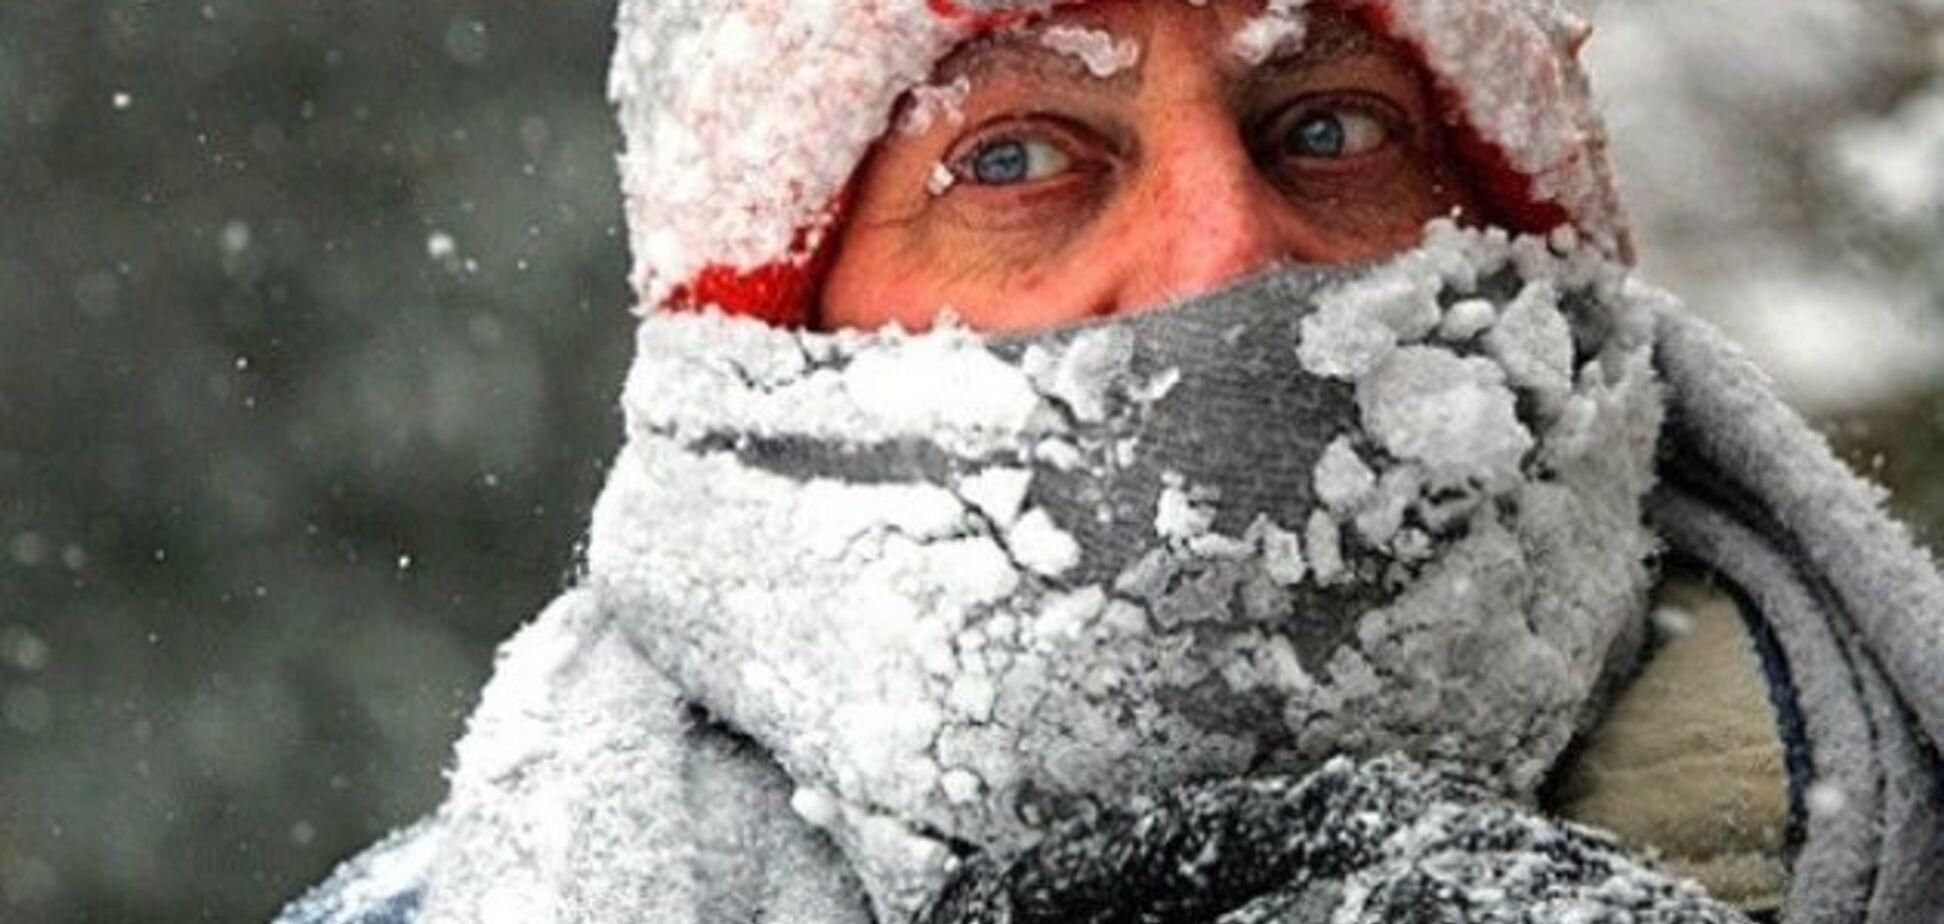 Екстремальної зими не буде! Кліматологиня змінила прогноз погоди для України